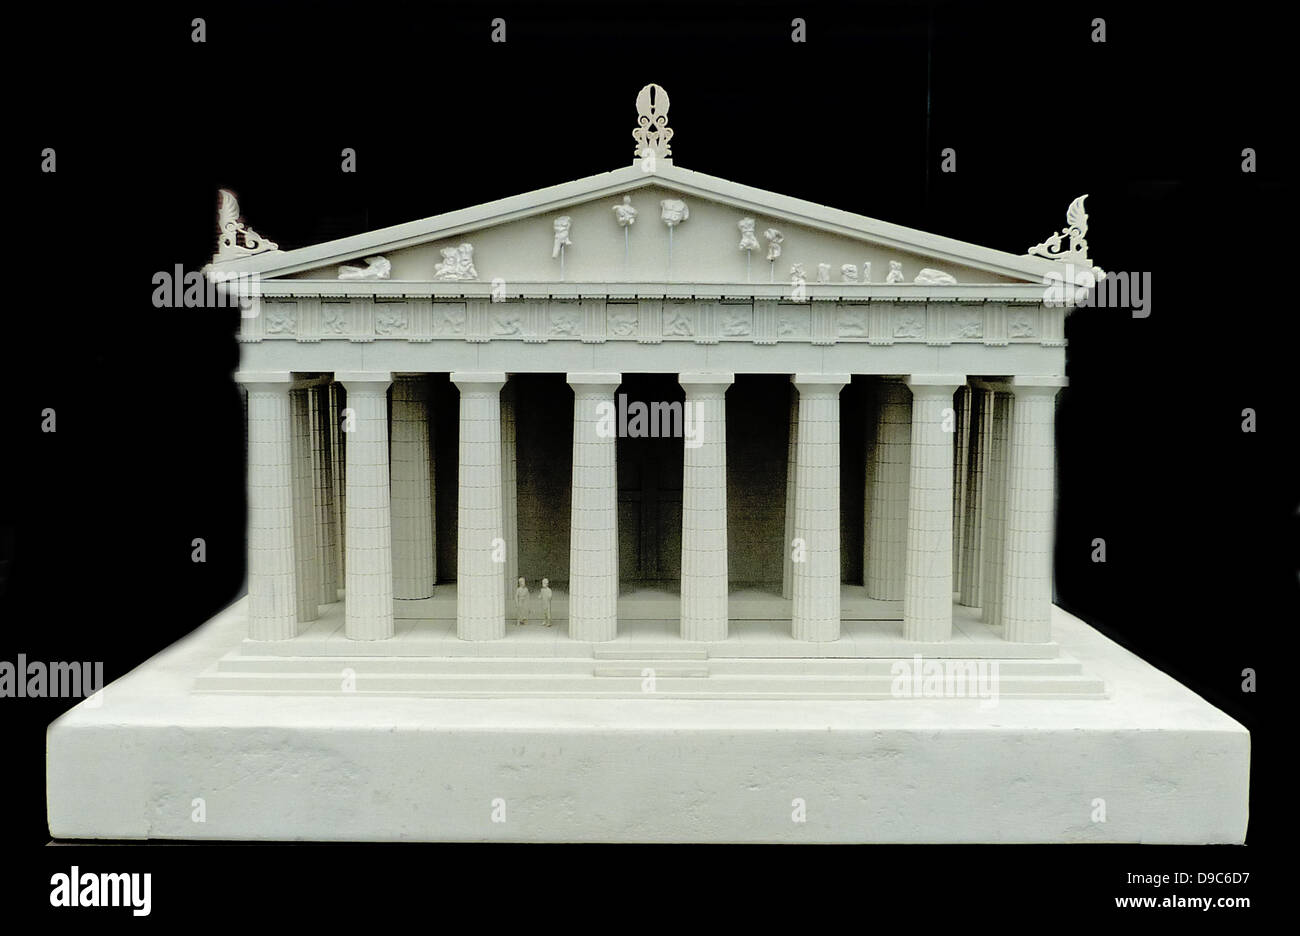 La ricostruzione del frontone ovest del Partenone secondo un disegno da K. Schwerzek (1896), museo dell'Acropoli di Atene Foto Stock